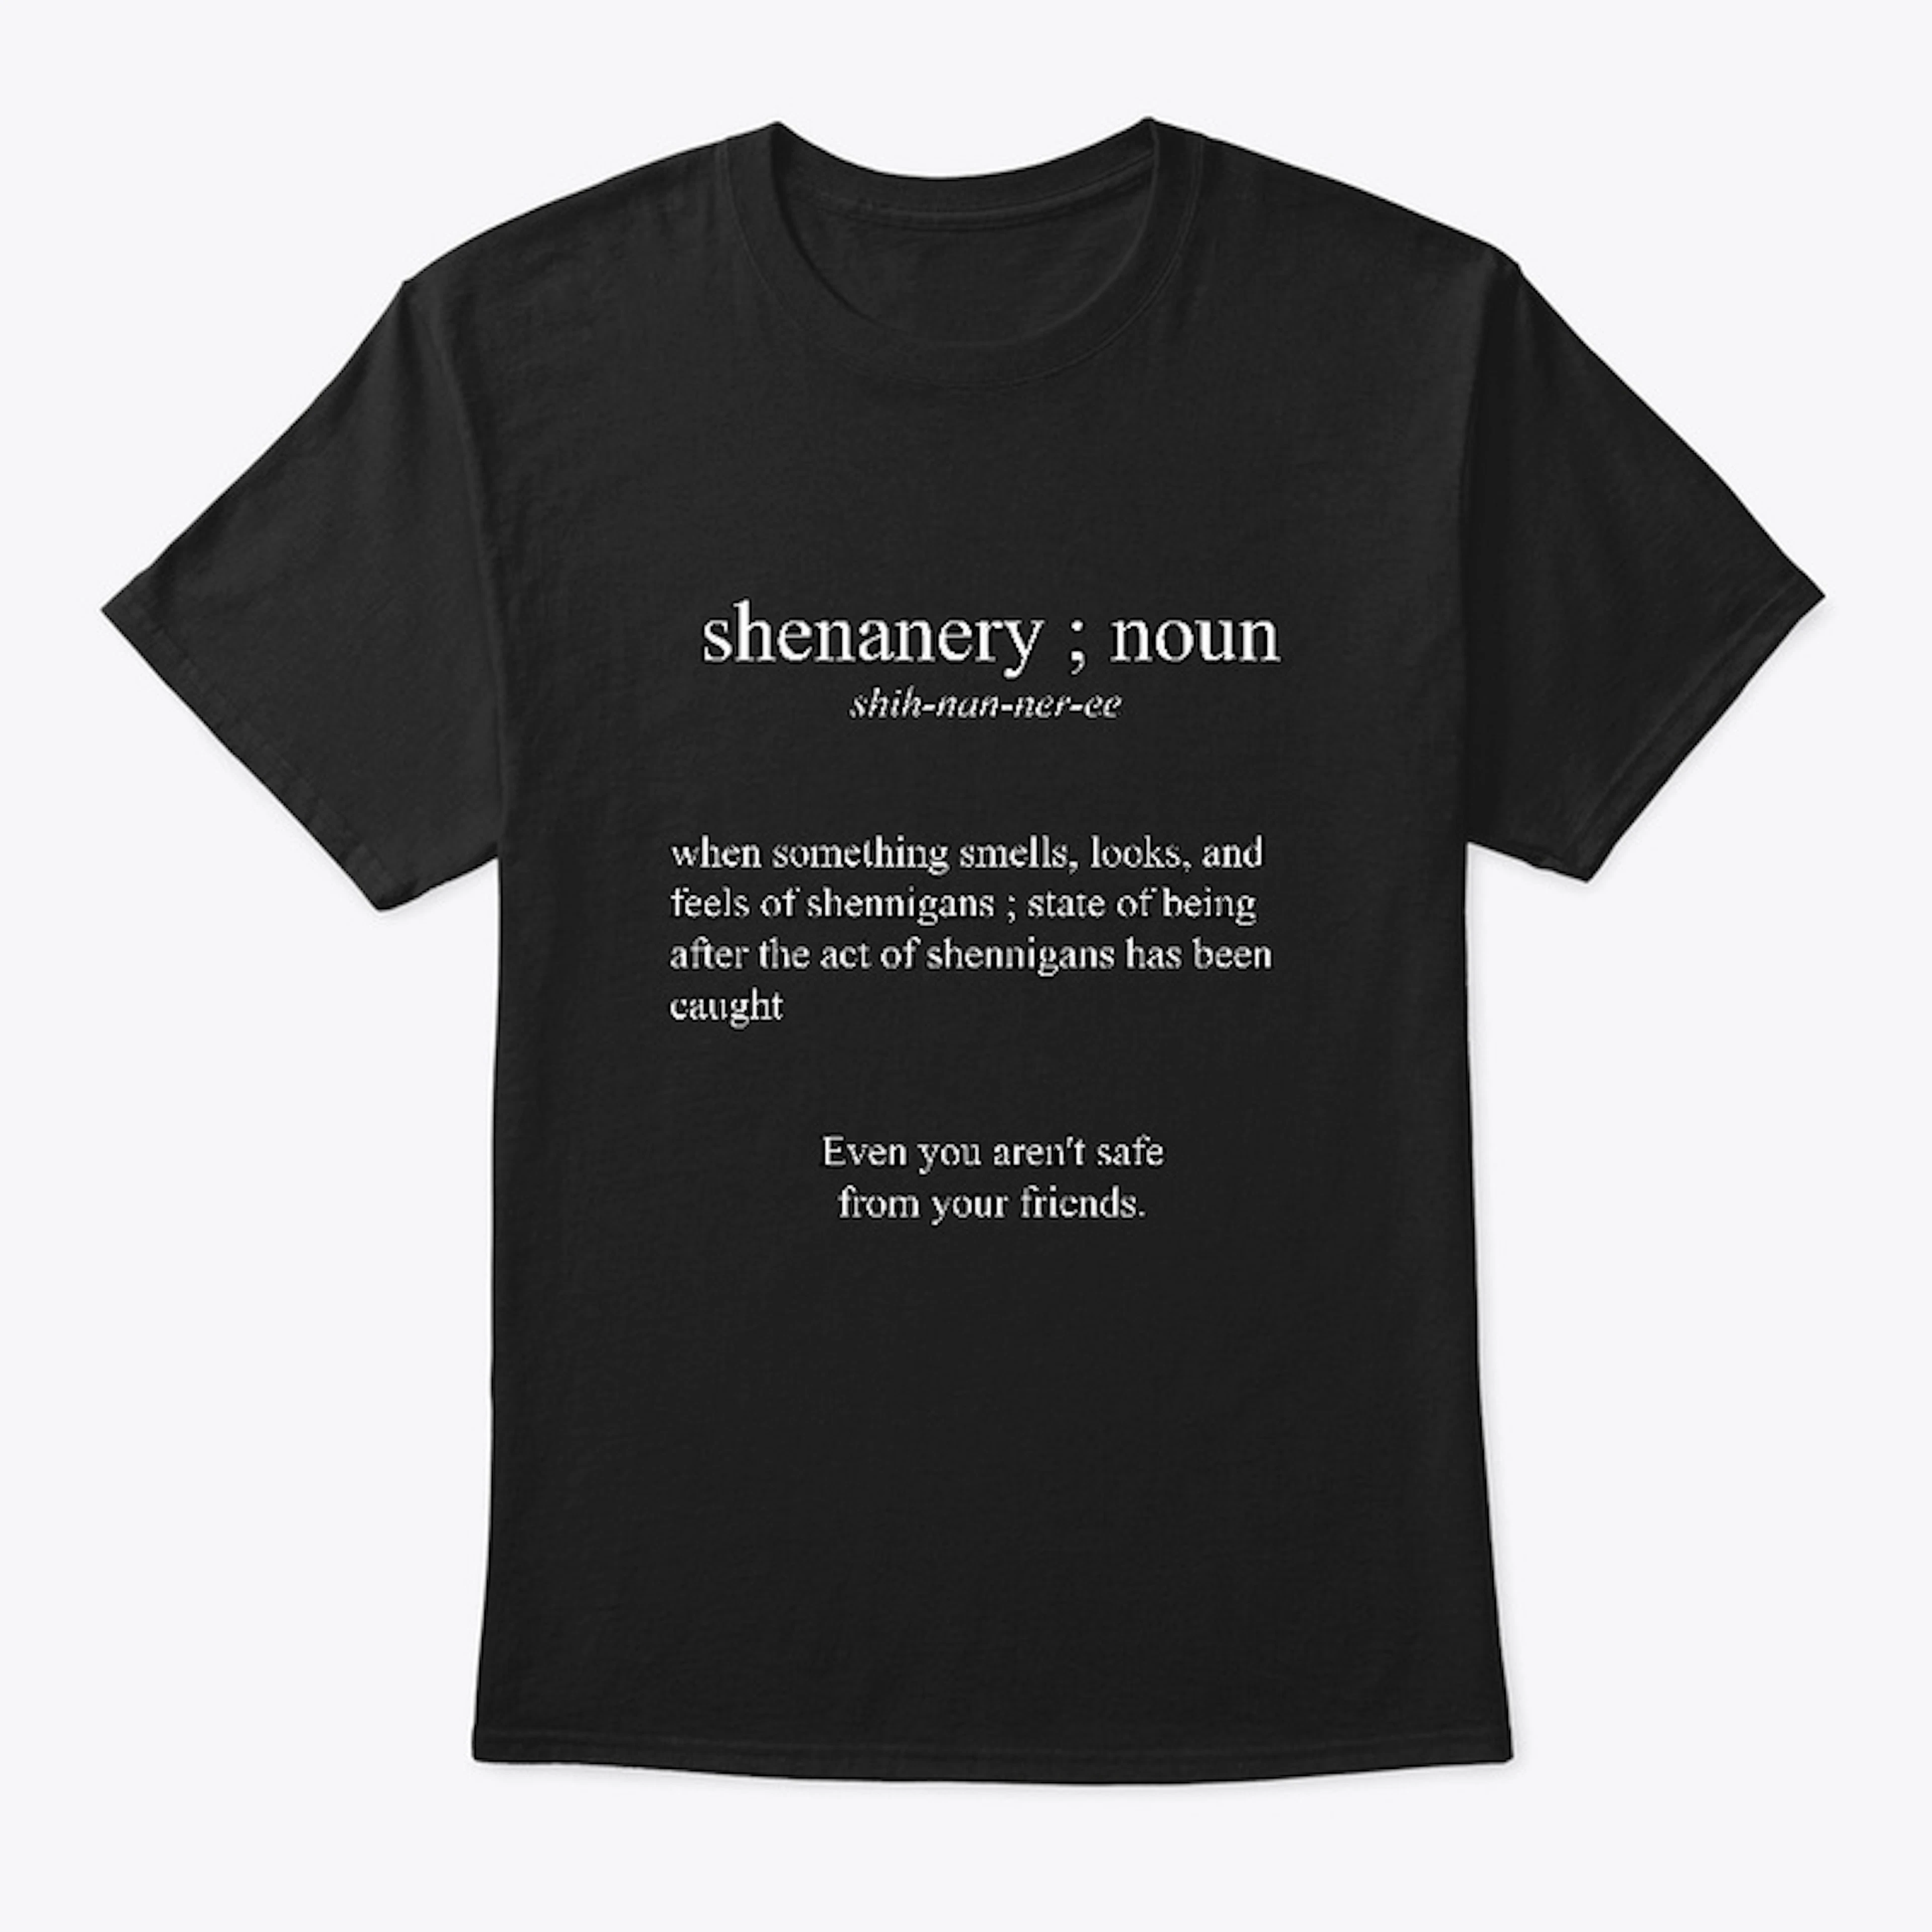 Shenanery